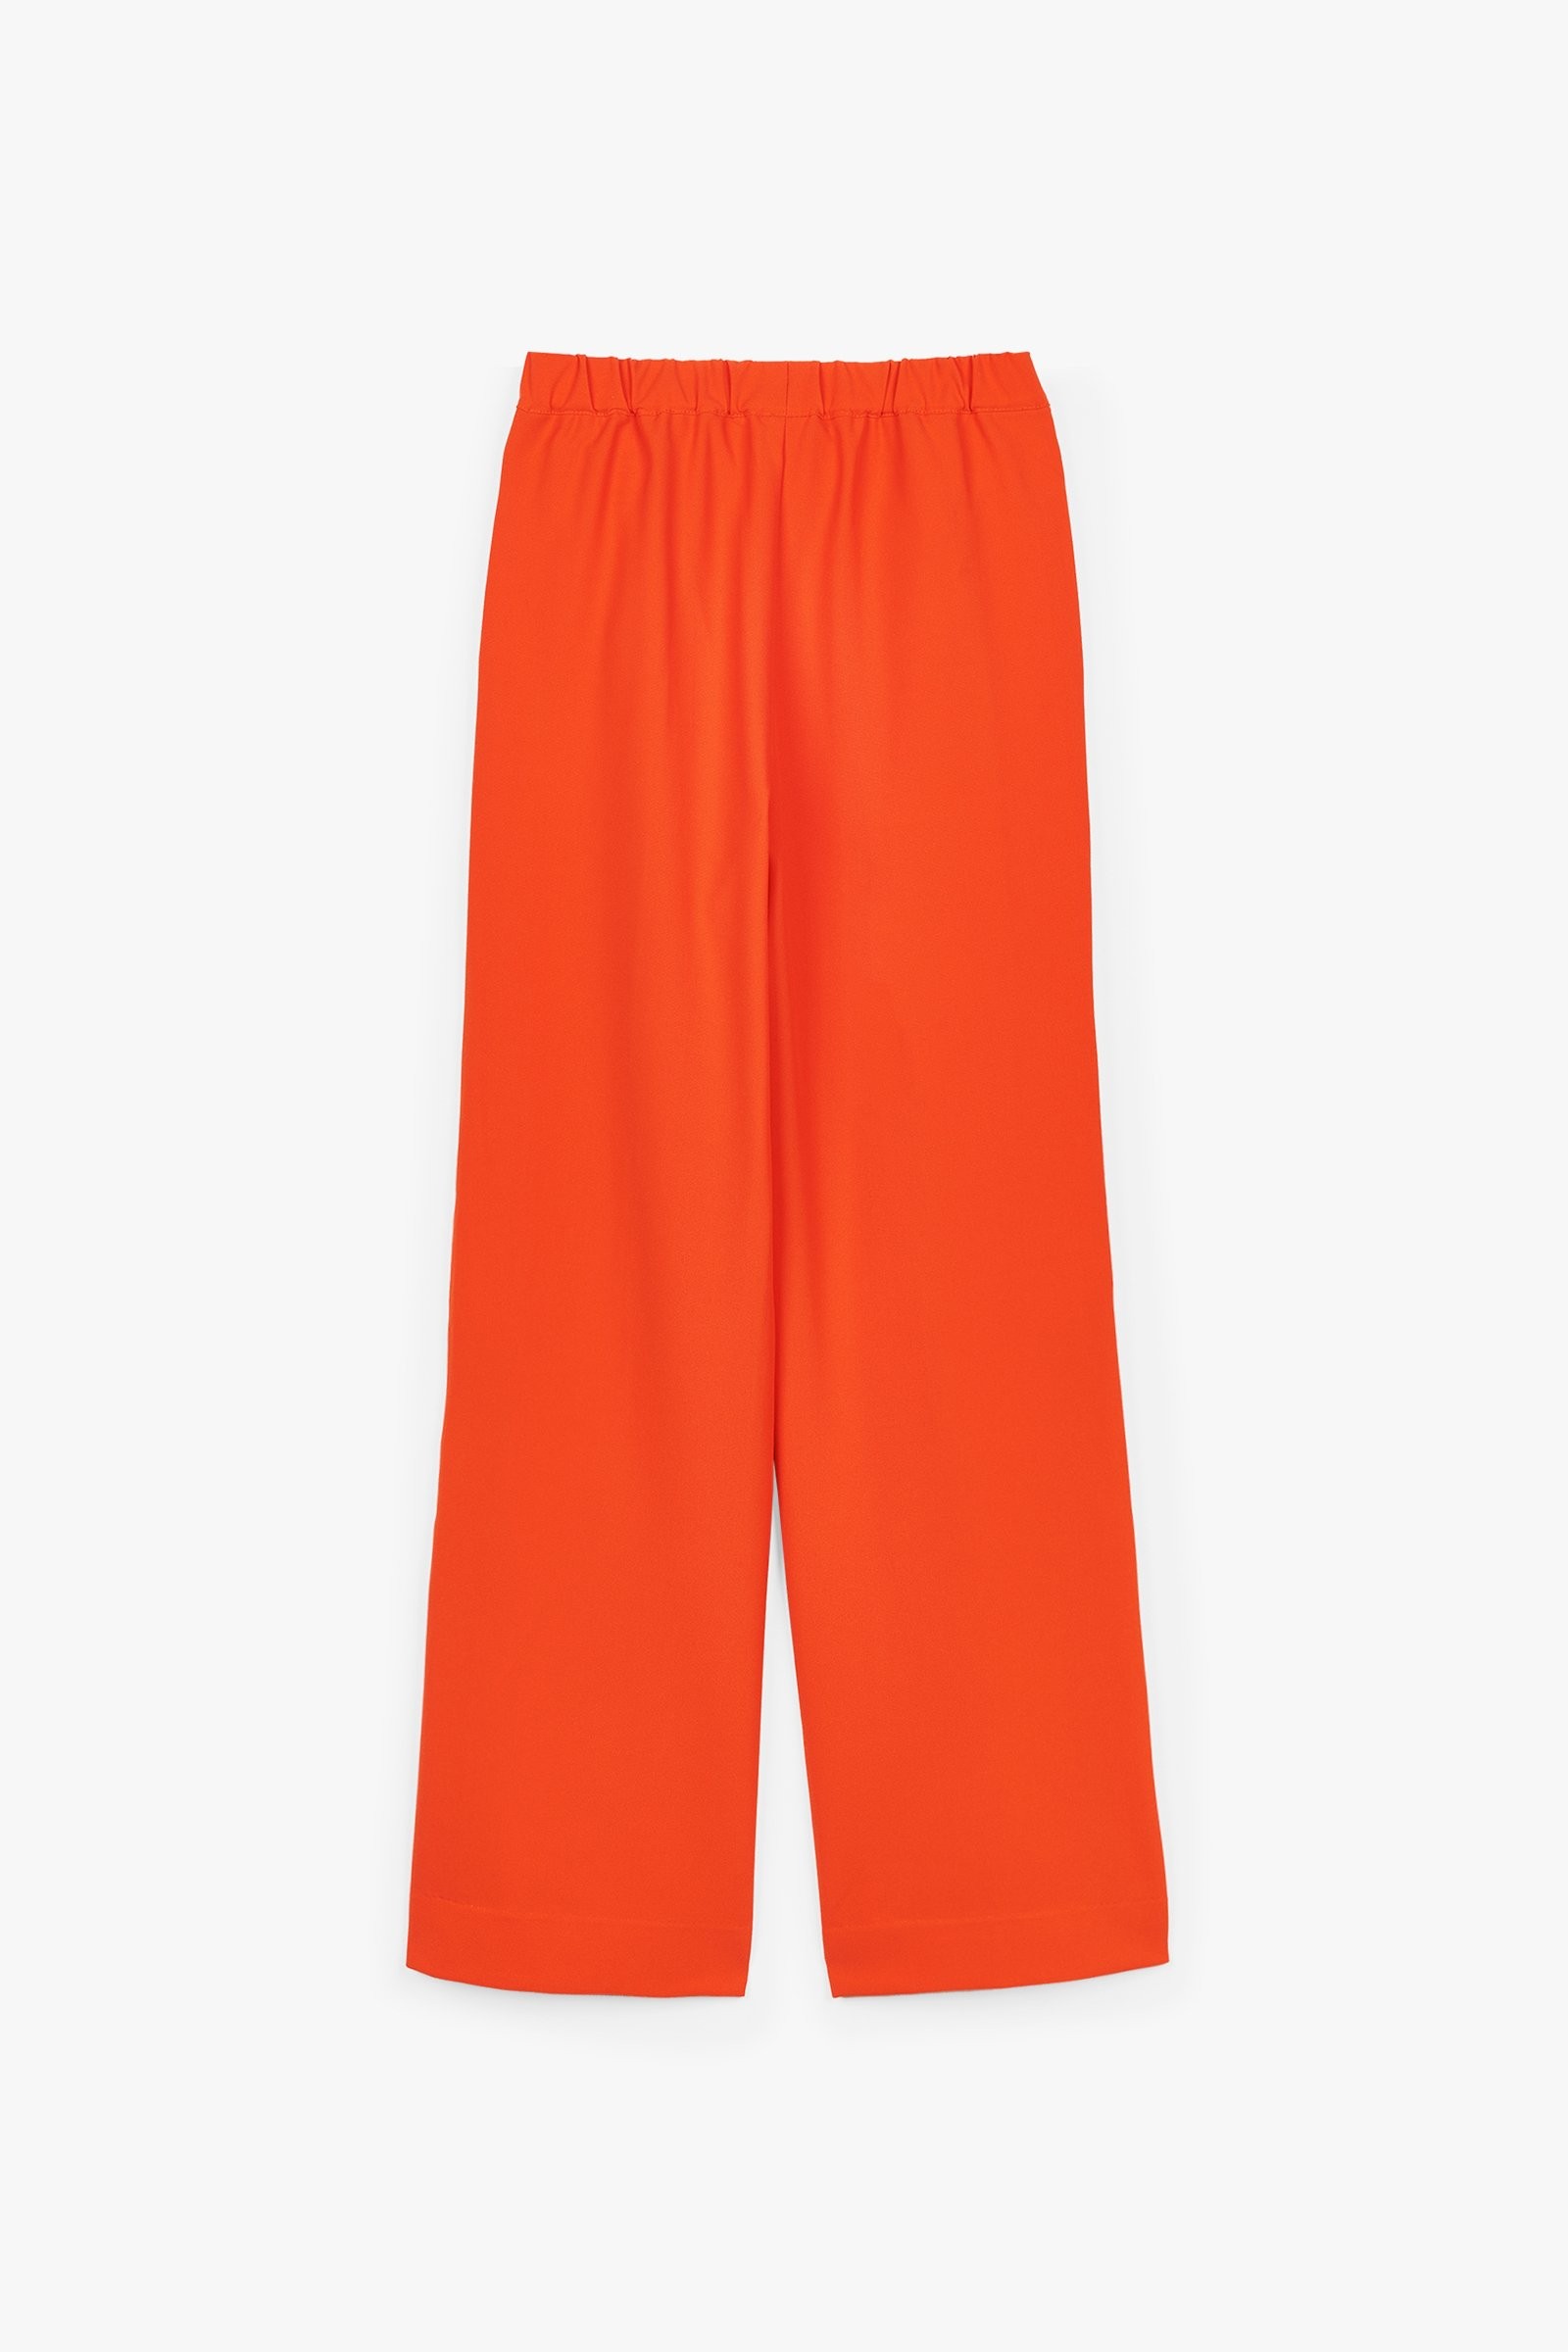 CKS Teens - DREAM - pantalon long - orange